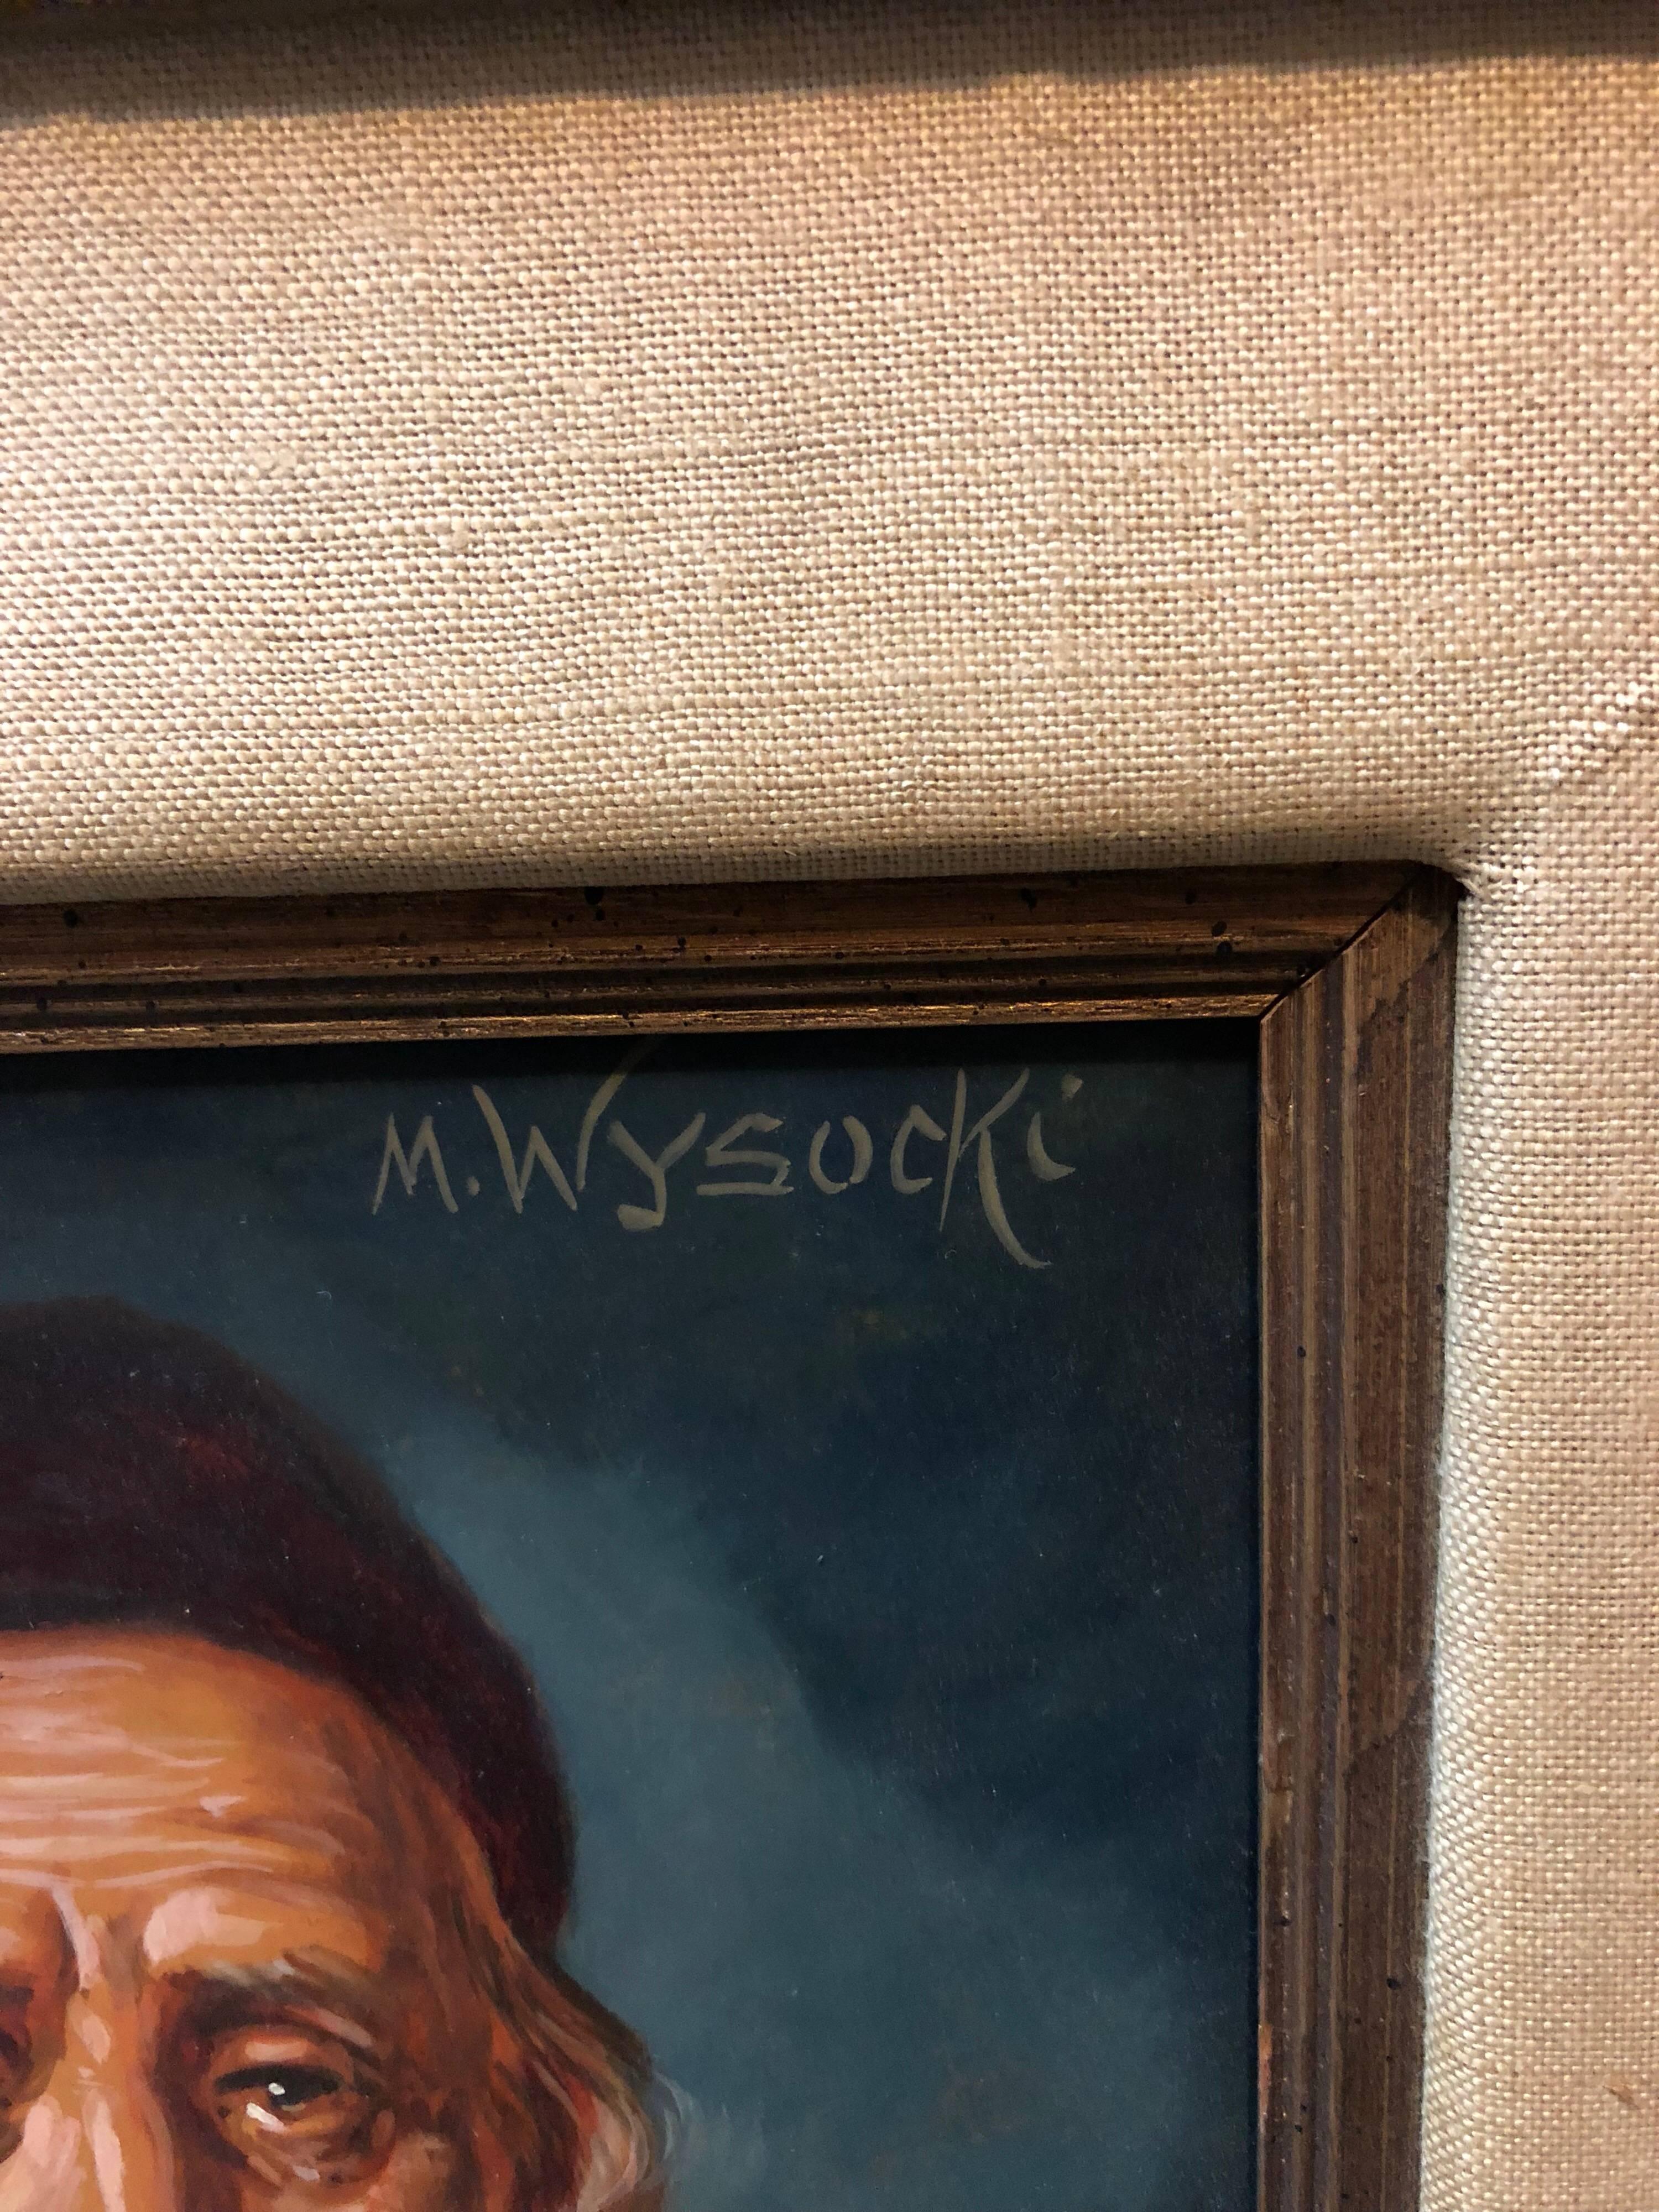 Realistisches Porträt eines älteren Rabbiners von dem polnisch-österreichischen Künstler M. Wysocki. Hier vermittelt der Künstler ein Gefühl von stiller Grandeur durch die Augen seines Motivs und die Art, wie es dargestellt wird. Er gehört zu einer